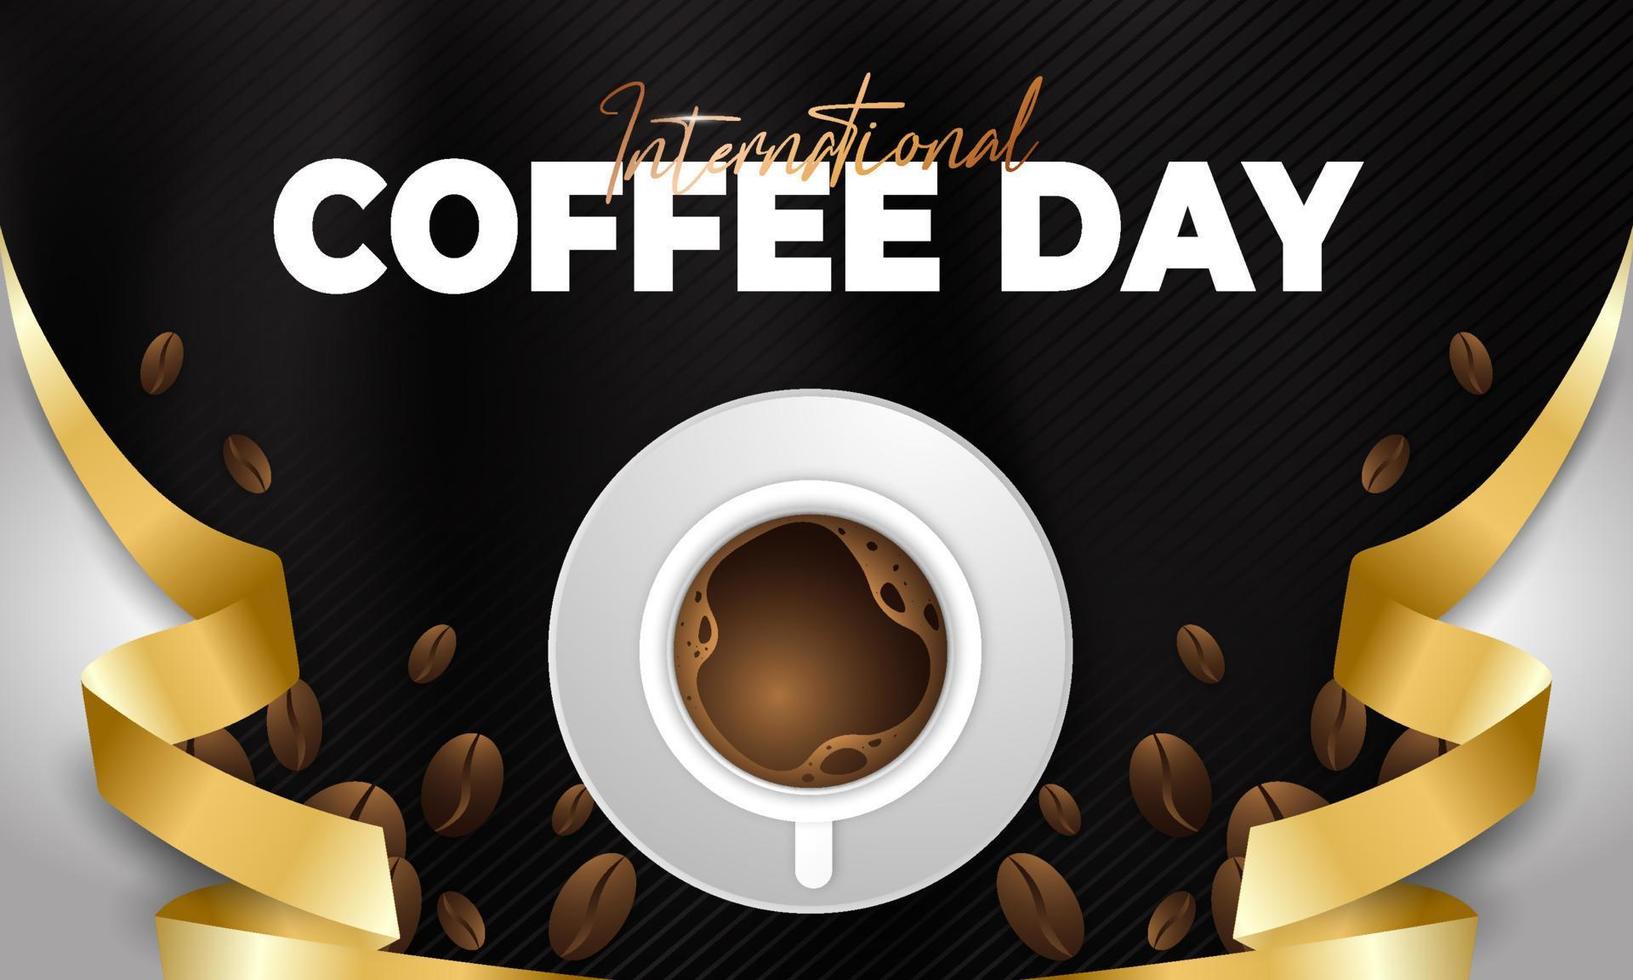 diseño de saludo del día internacional del café moderno y premium vector